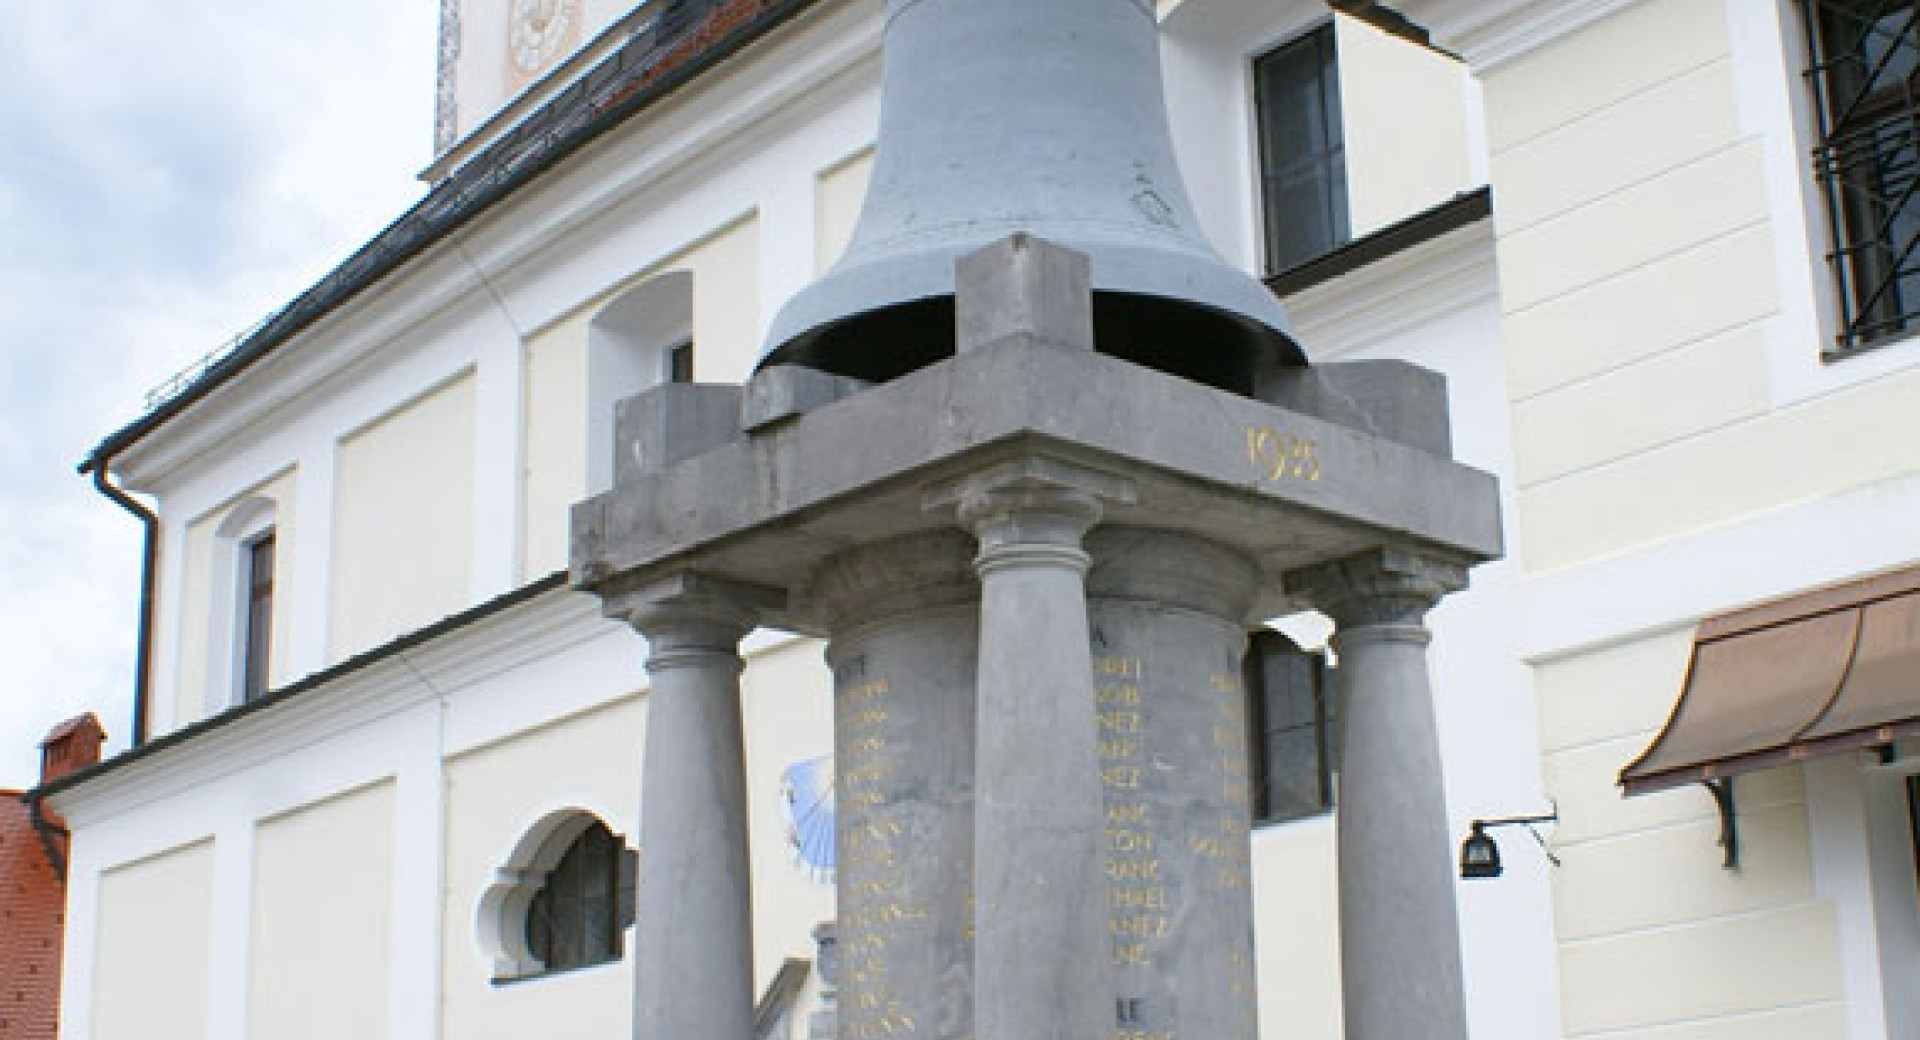 Plečnikov spomenik žrtvam prve svetovne vojne pred cerkvijo svetega Petra v Komendi.